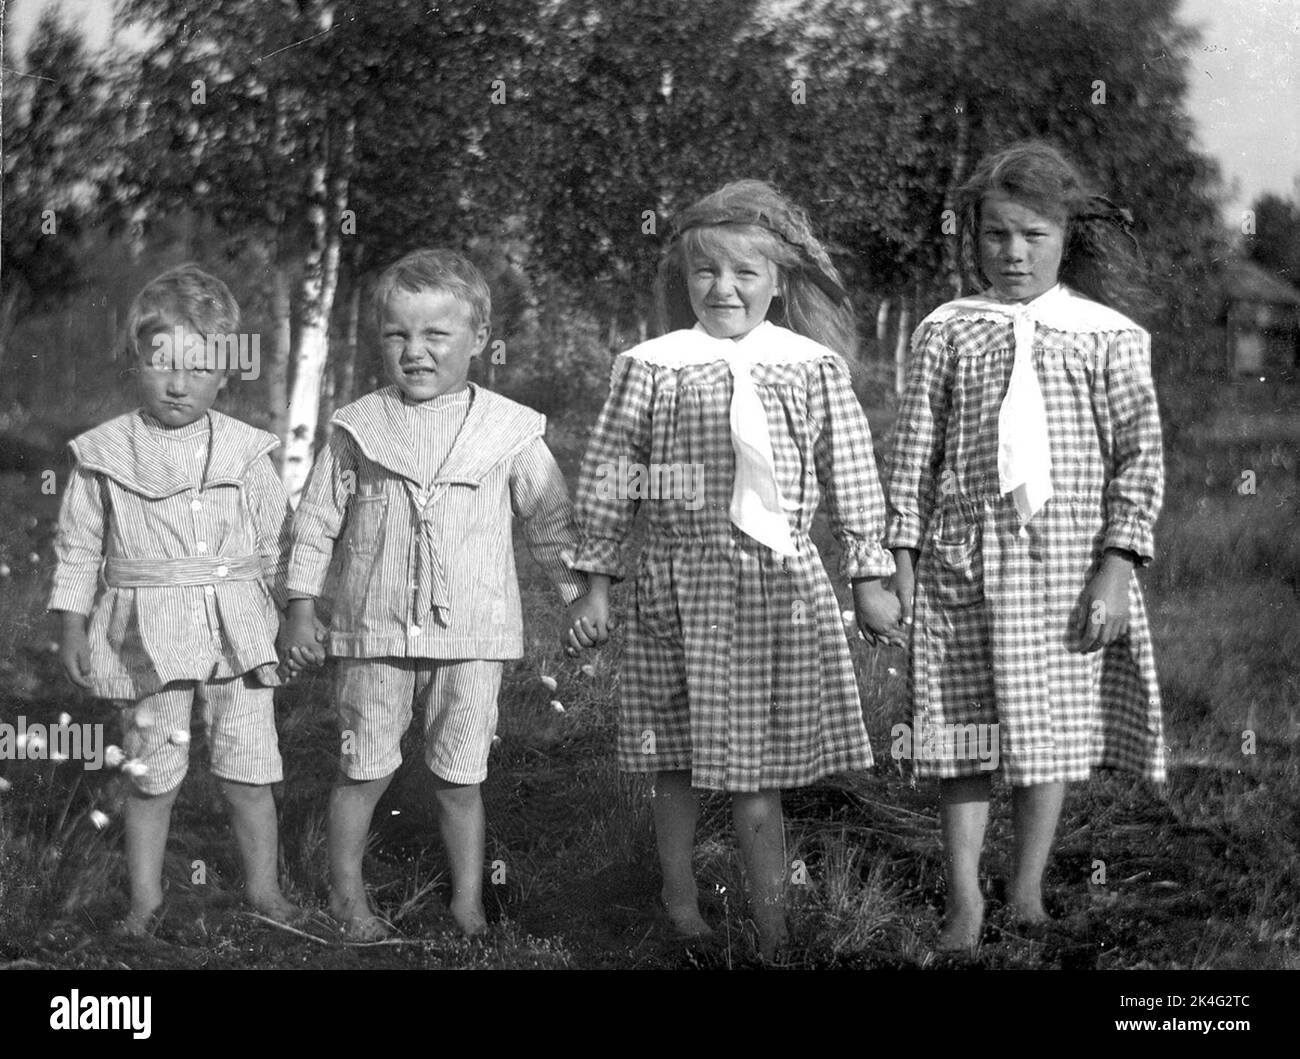 Gruppenbild von vier Kindern. Zwei Jungen in den gleichen gestreiften Kostümen mit Seemannskragen und kurzen Hosen. Zwei Mädchen in ähnlich karierten Kleidern mit weißen Kragen. Nordisch Stockfoto